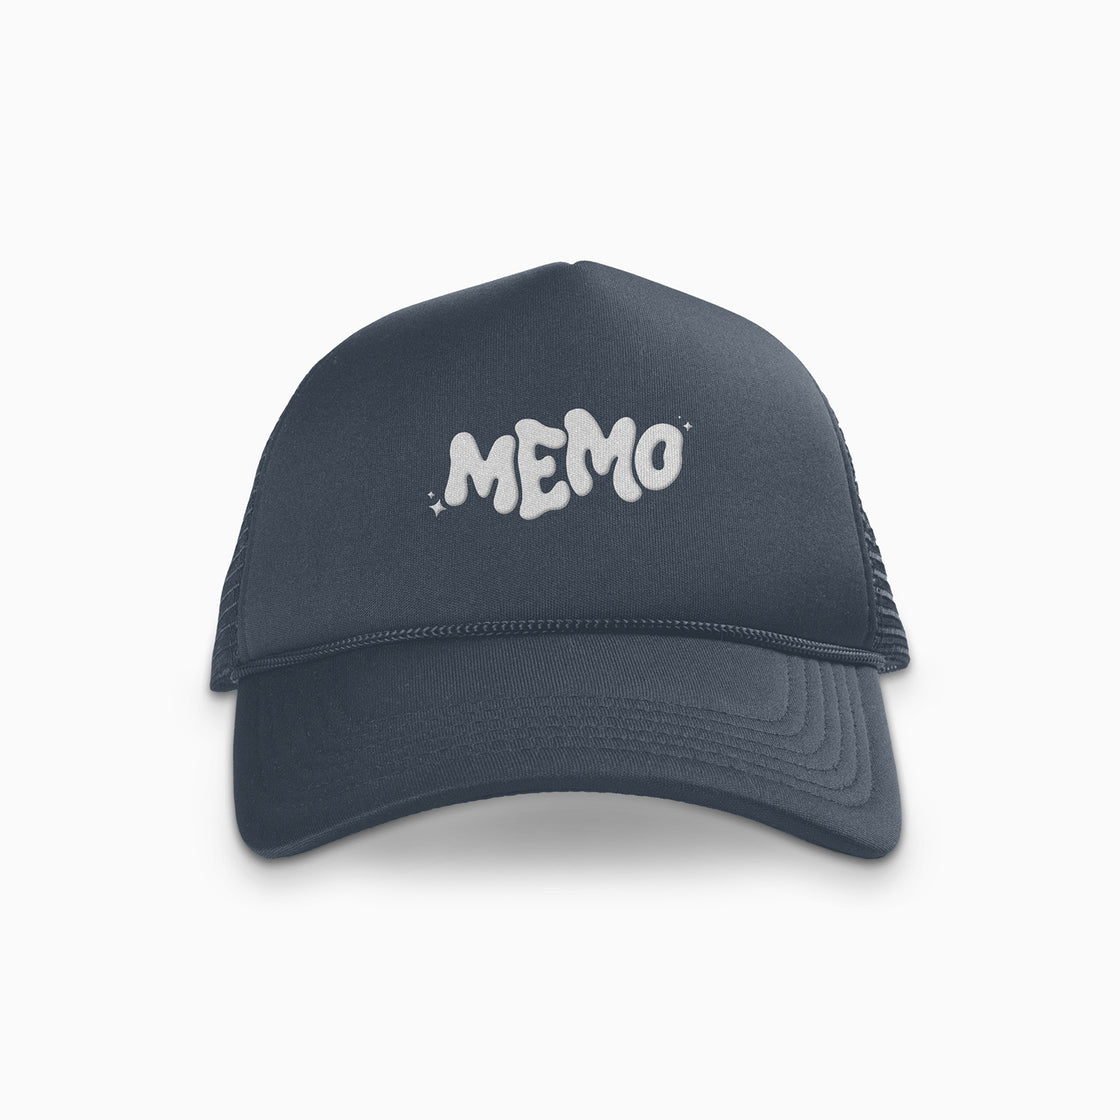 MEMO Album Trucker Hat - Navy